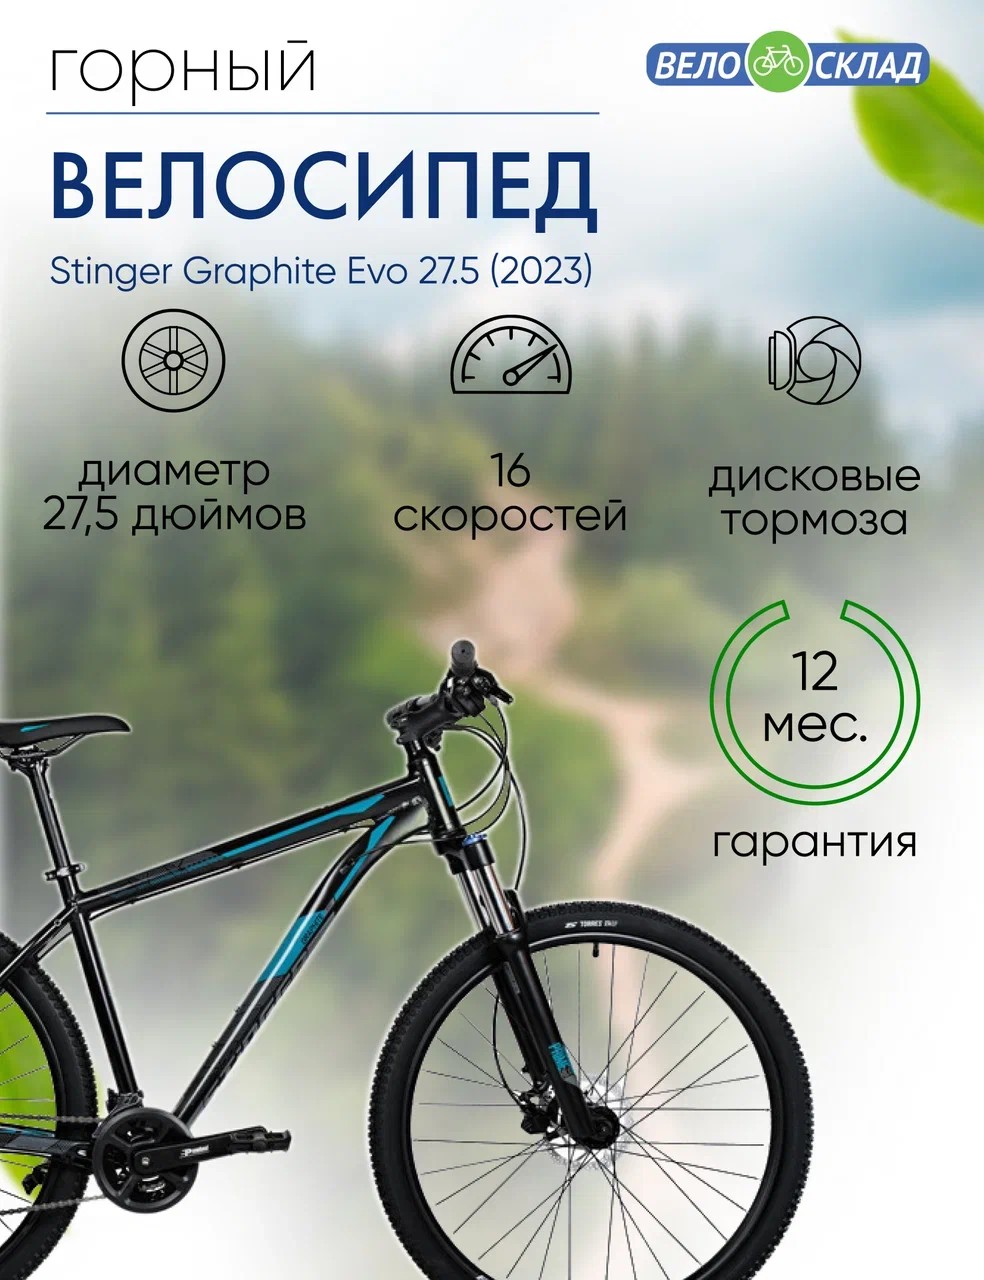 Горный велосипед Stinger Graphite Evo 27.5, год 2023, цвет Черный, ростовка 18